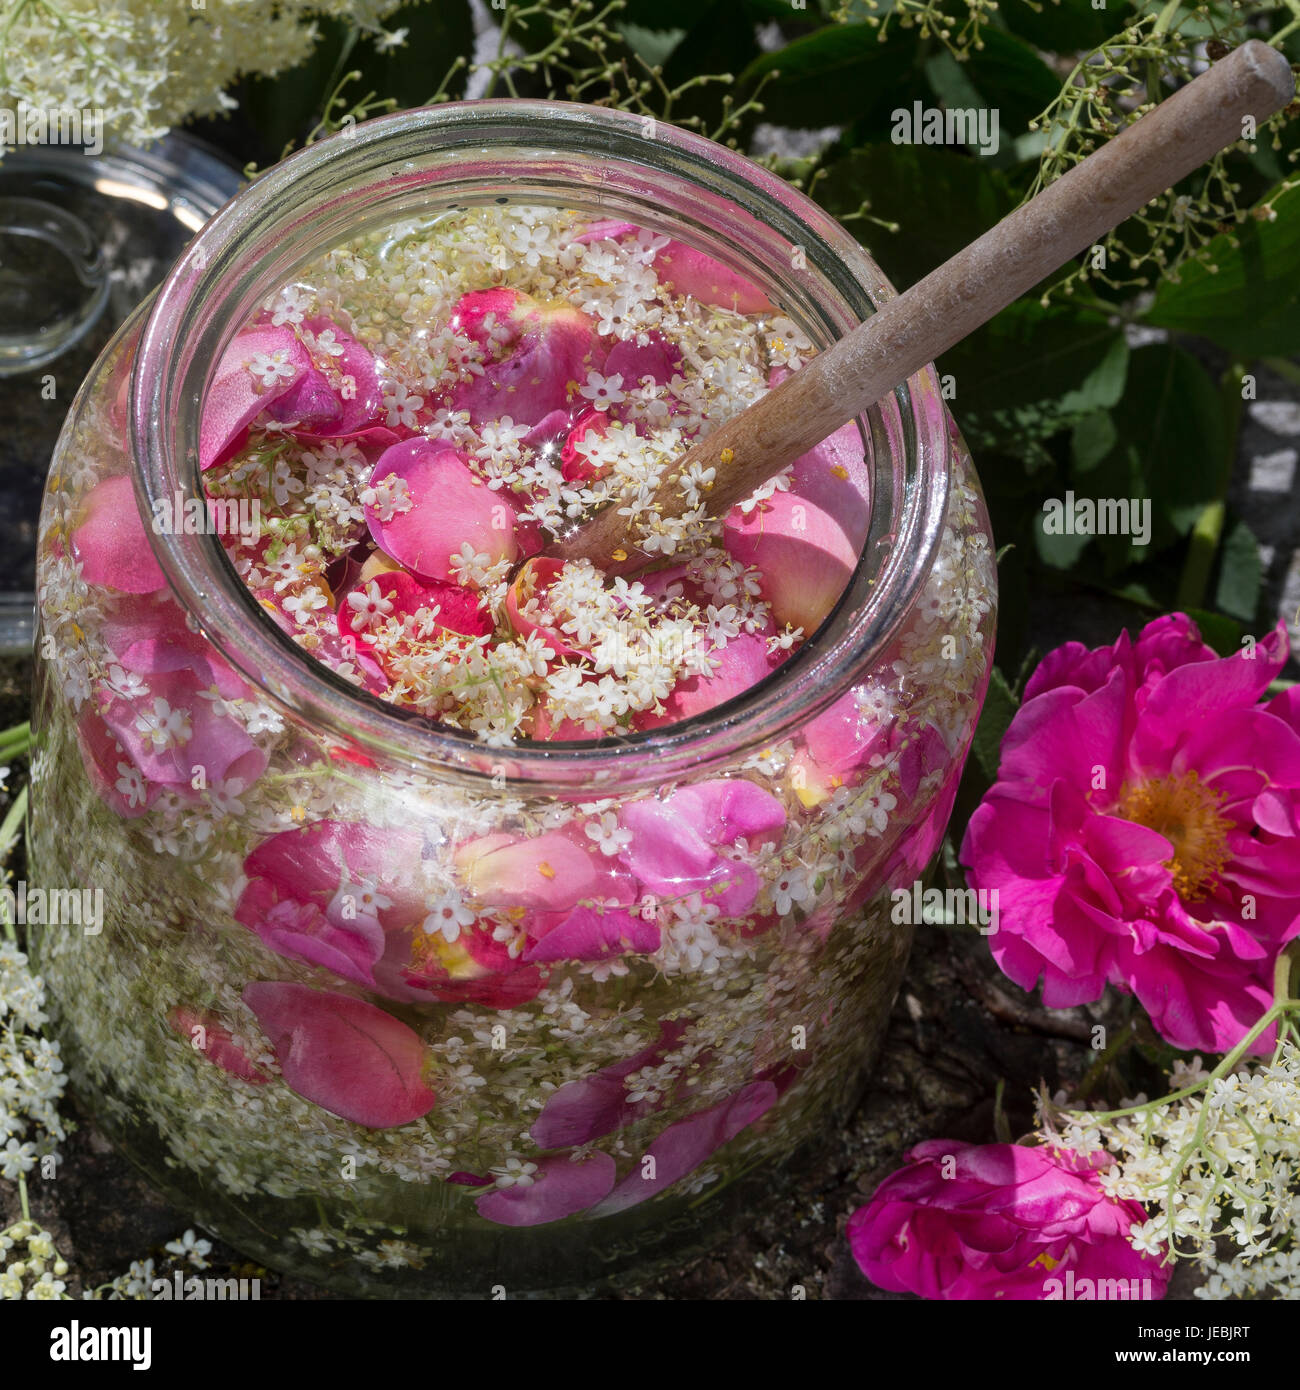 Holunderblüten-Sirup gemeinsam mit Blütenblättern von Apothekerrose, Holunderblütensirup, Sirup aus Holunderblüten, Holunderblüte, Holunder-Blüte, Blü Stock Photo